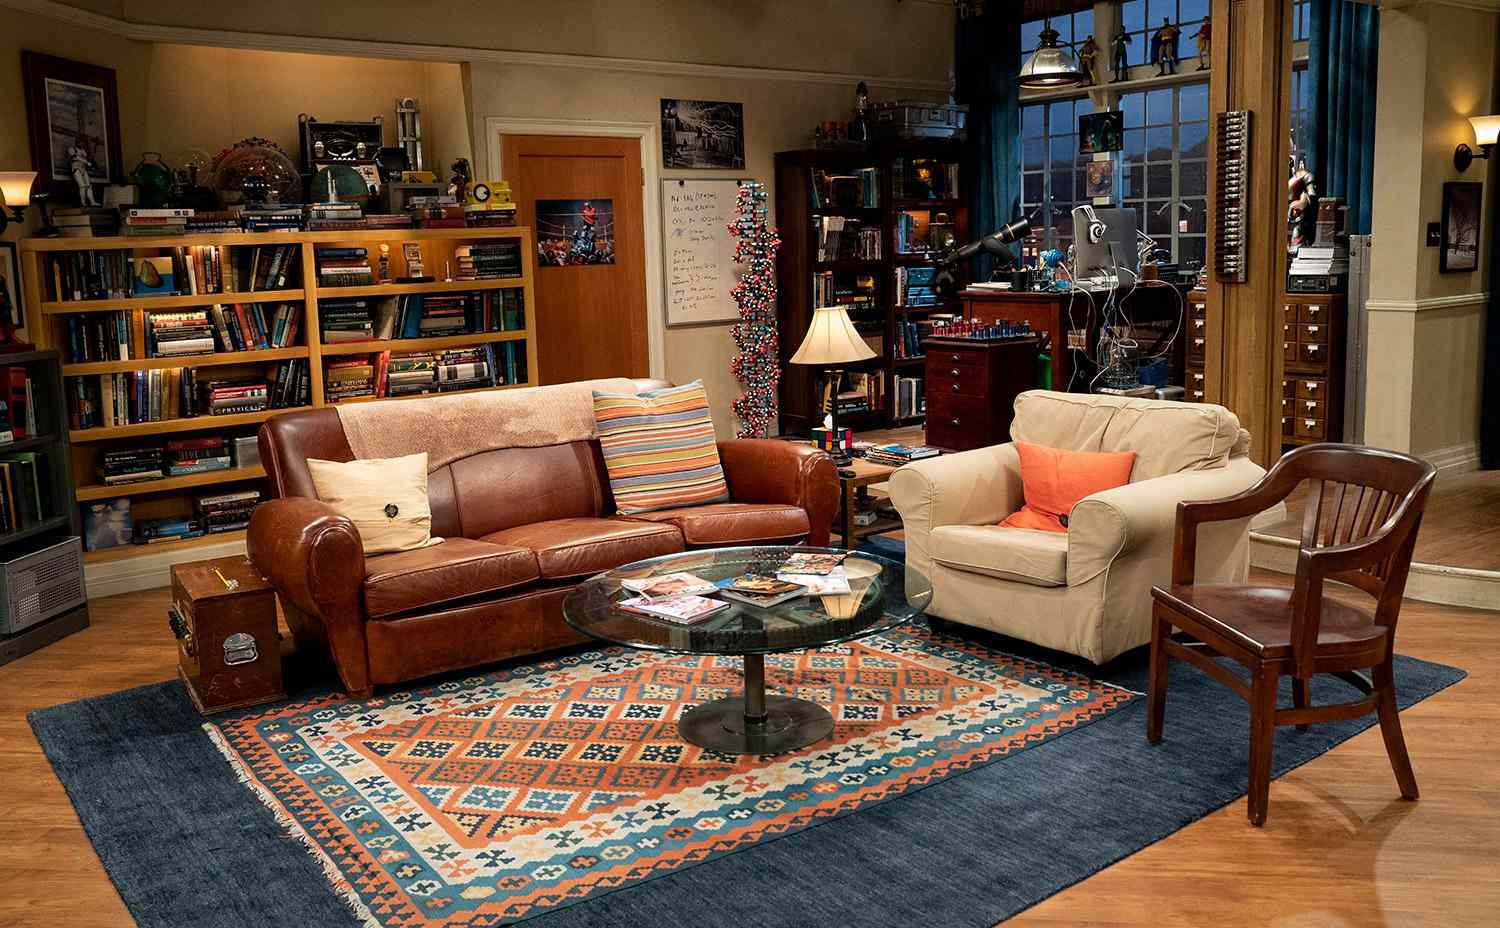 Die Wohnung von Leonard und Sheldon in The Big Bang Theory